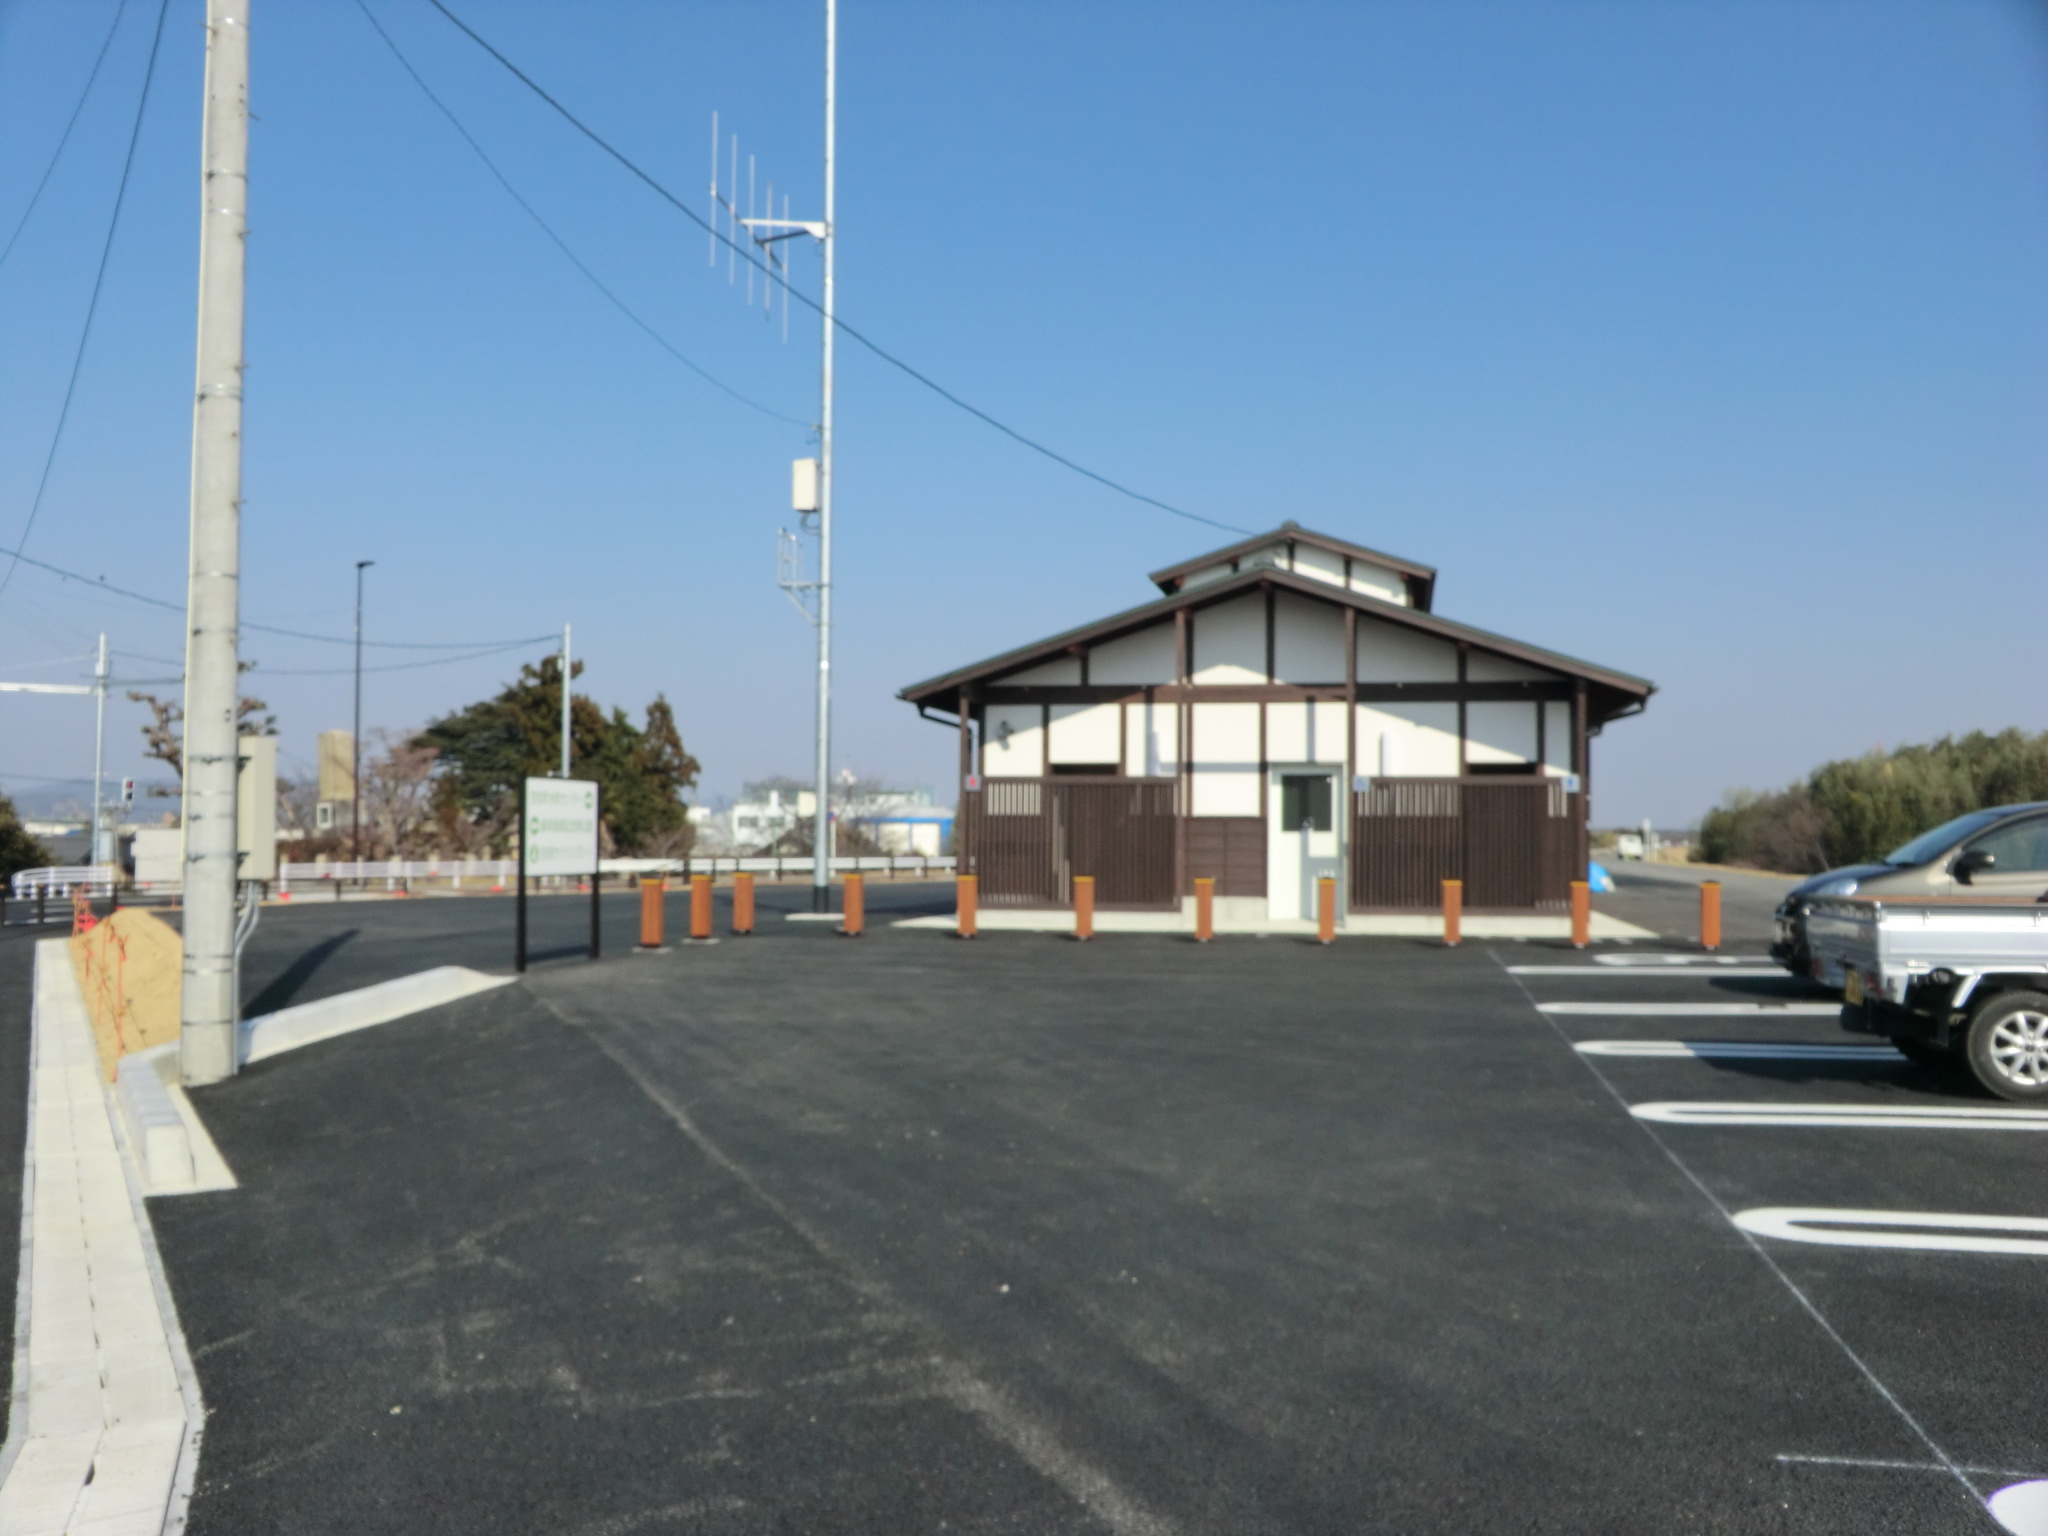 笠松町サイクリングロード中継拠点整備工事に伴う測量業務